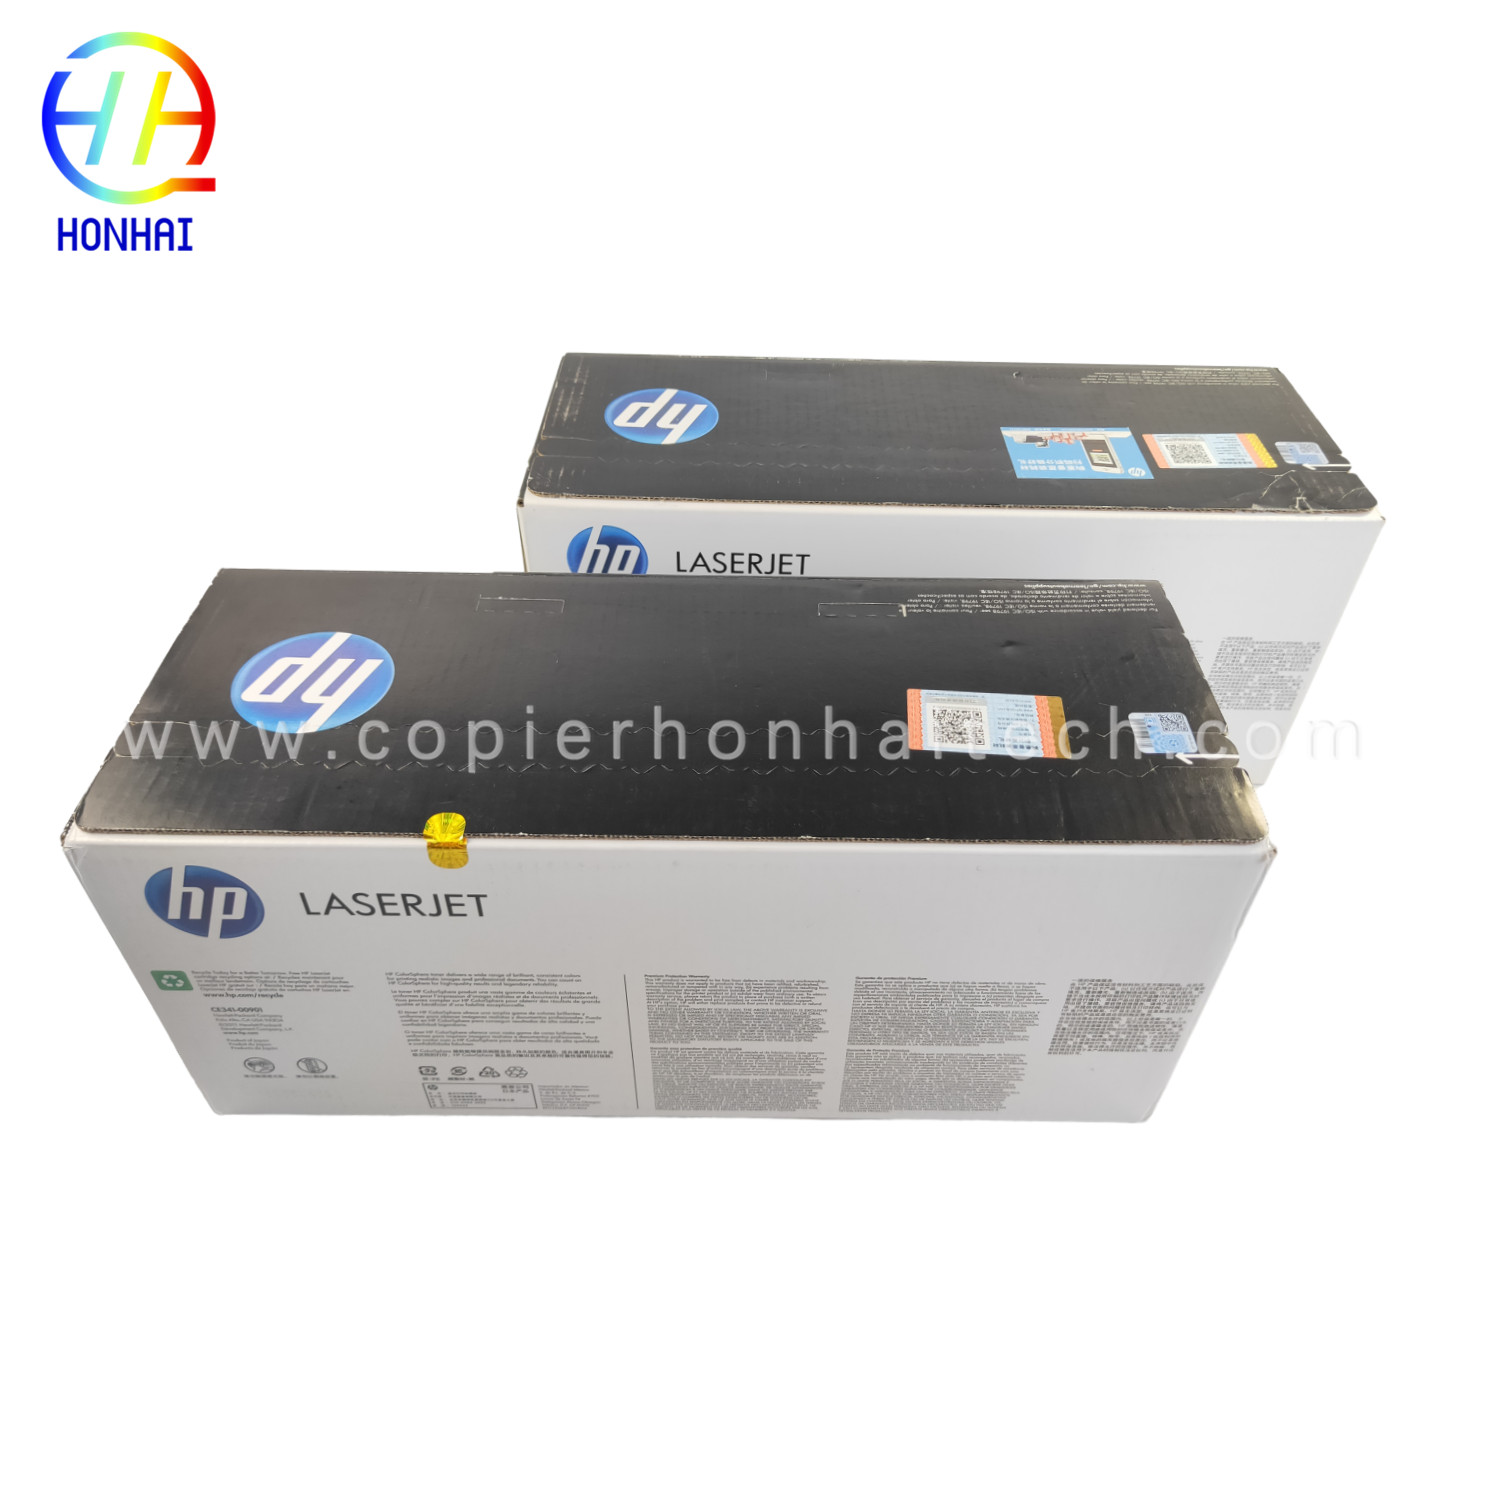 https://www.copierhonhaitech.com/original-toner-cartridge-for-hp-laserjet-enterprise-700-color-mfp-m775-series-651a-ce341a-cyan-ce342ac-yellow-16000-bogga-product/